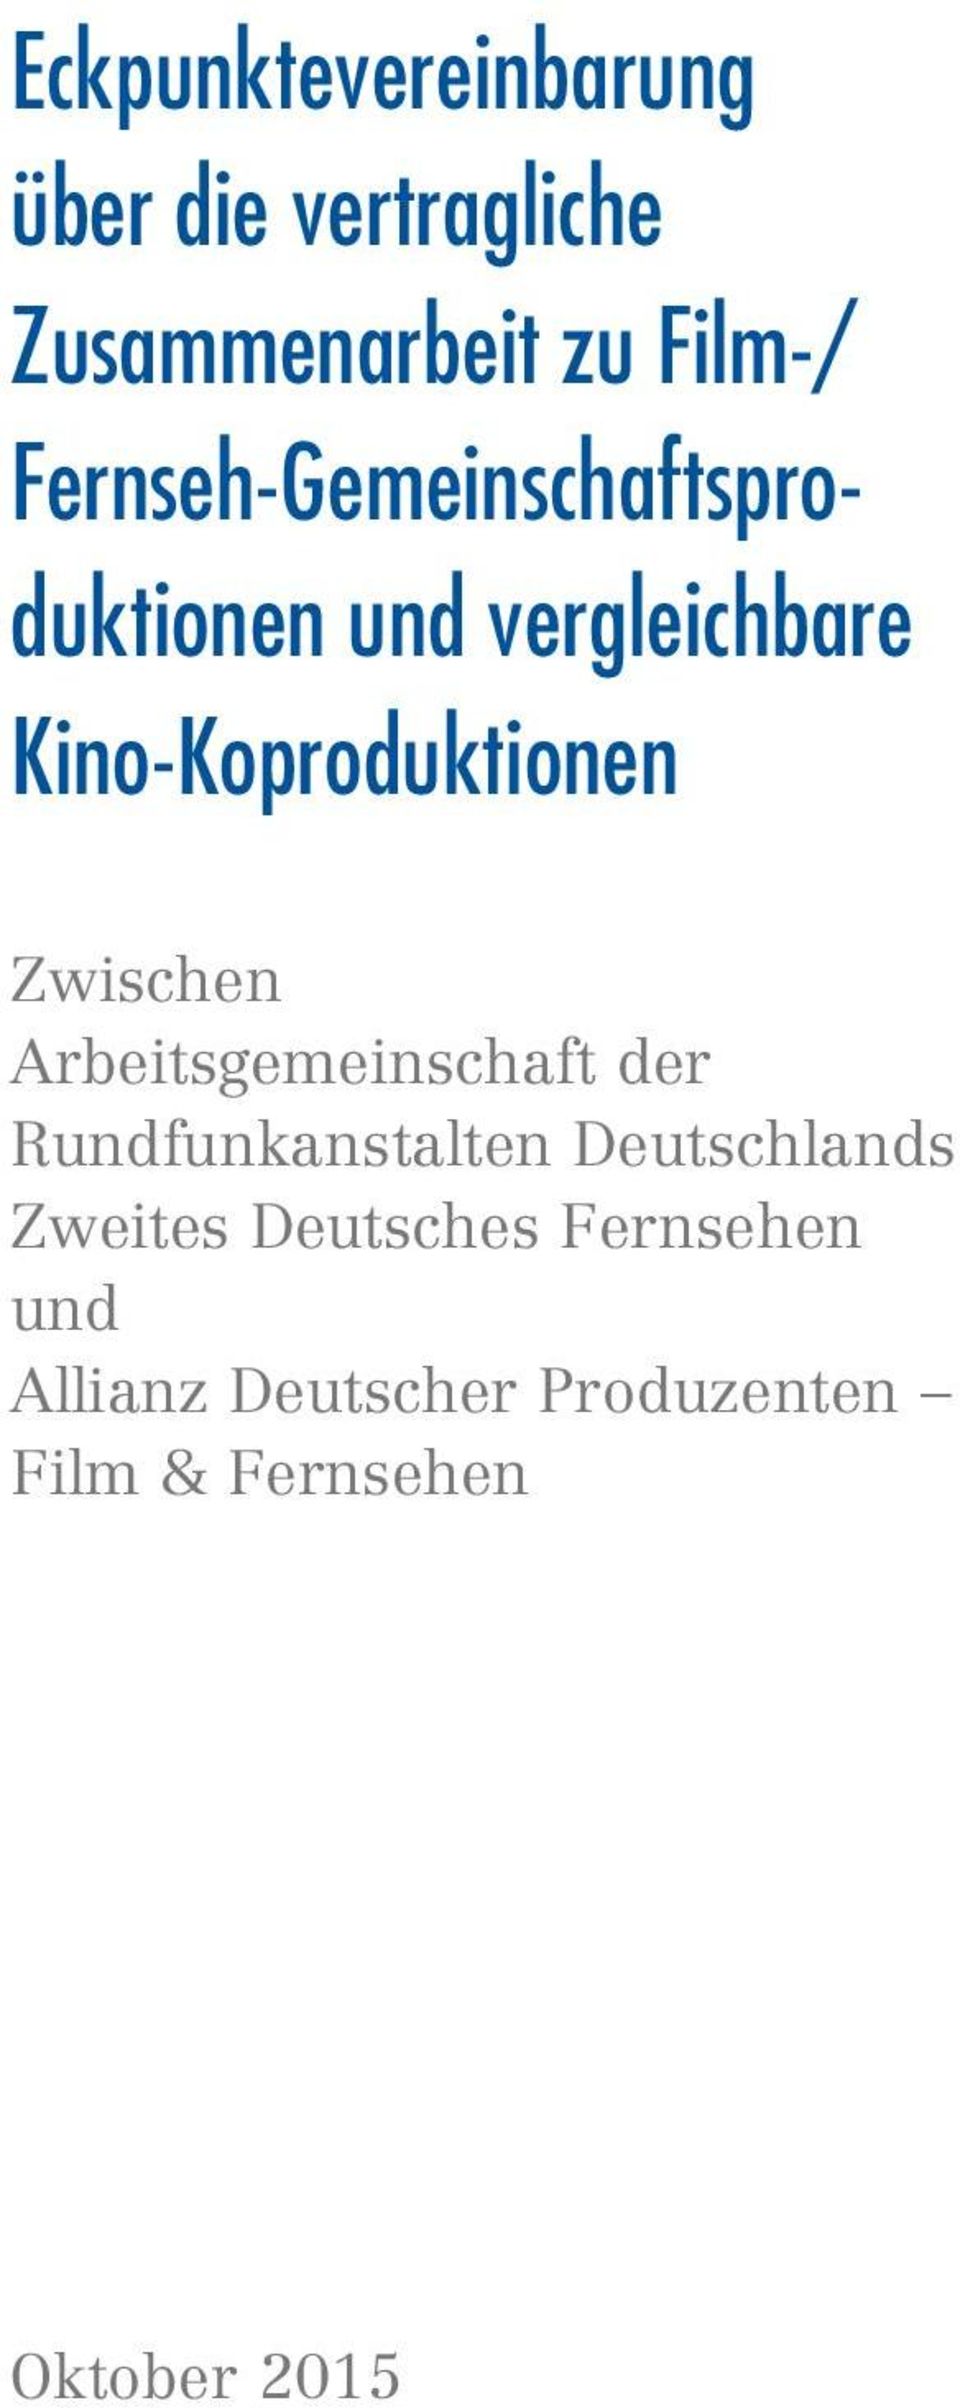 Eckpunktevereinbarung über Die Vertragliche Zusammenarbeit Zu Film